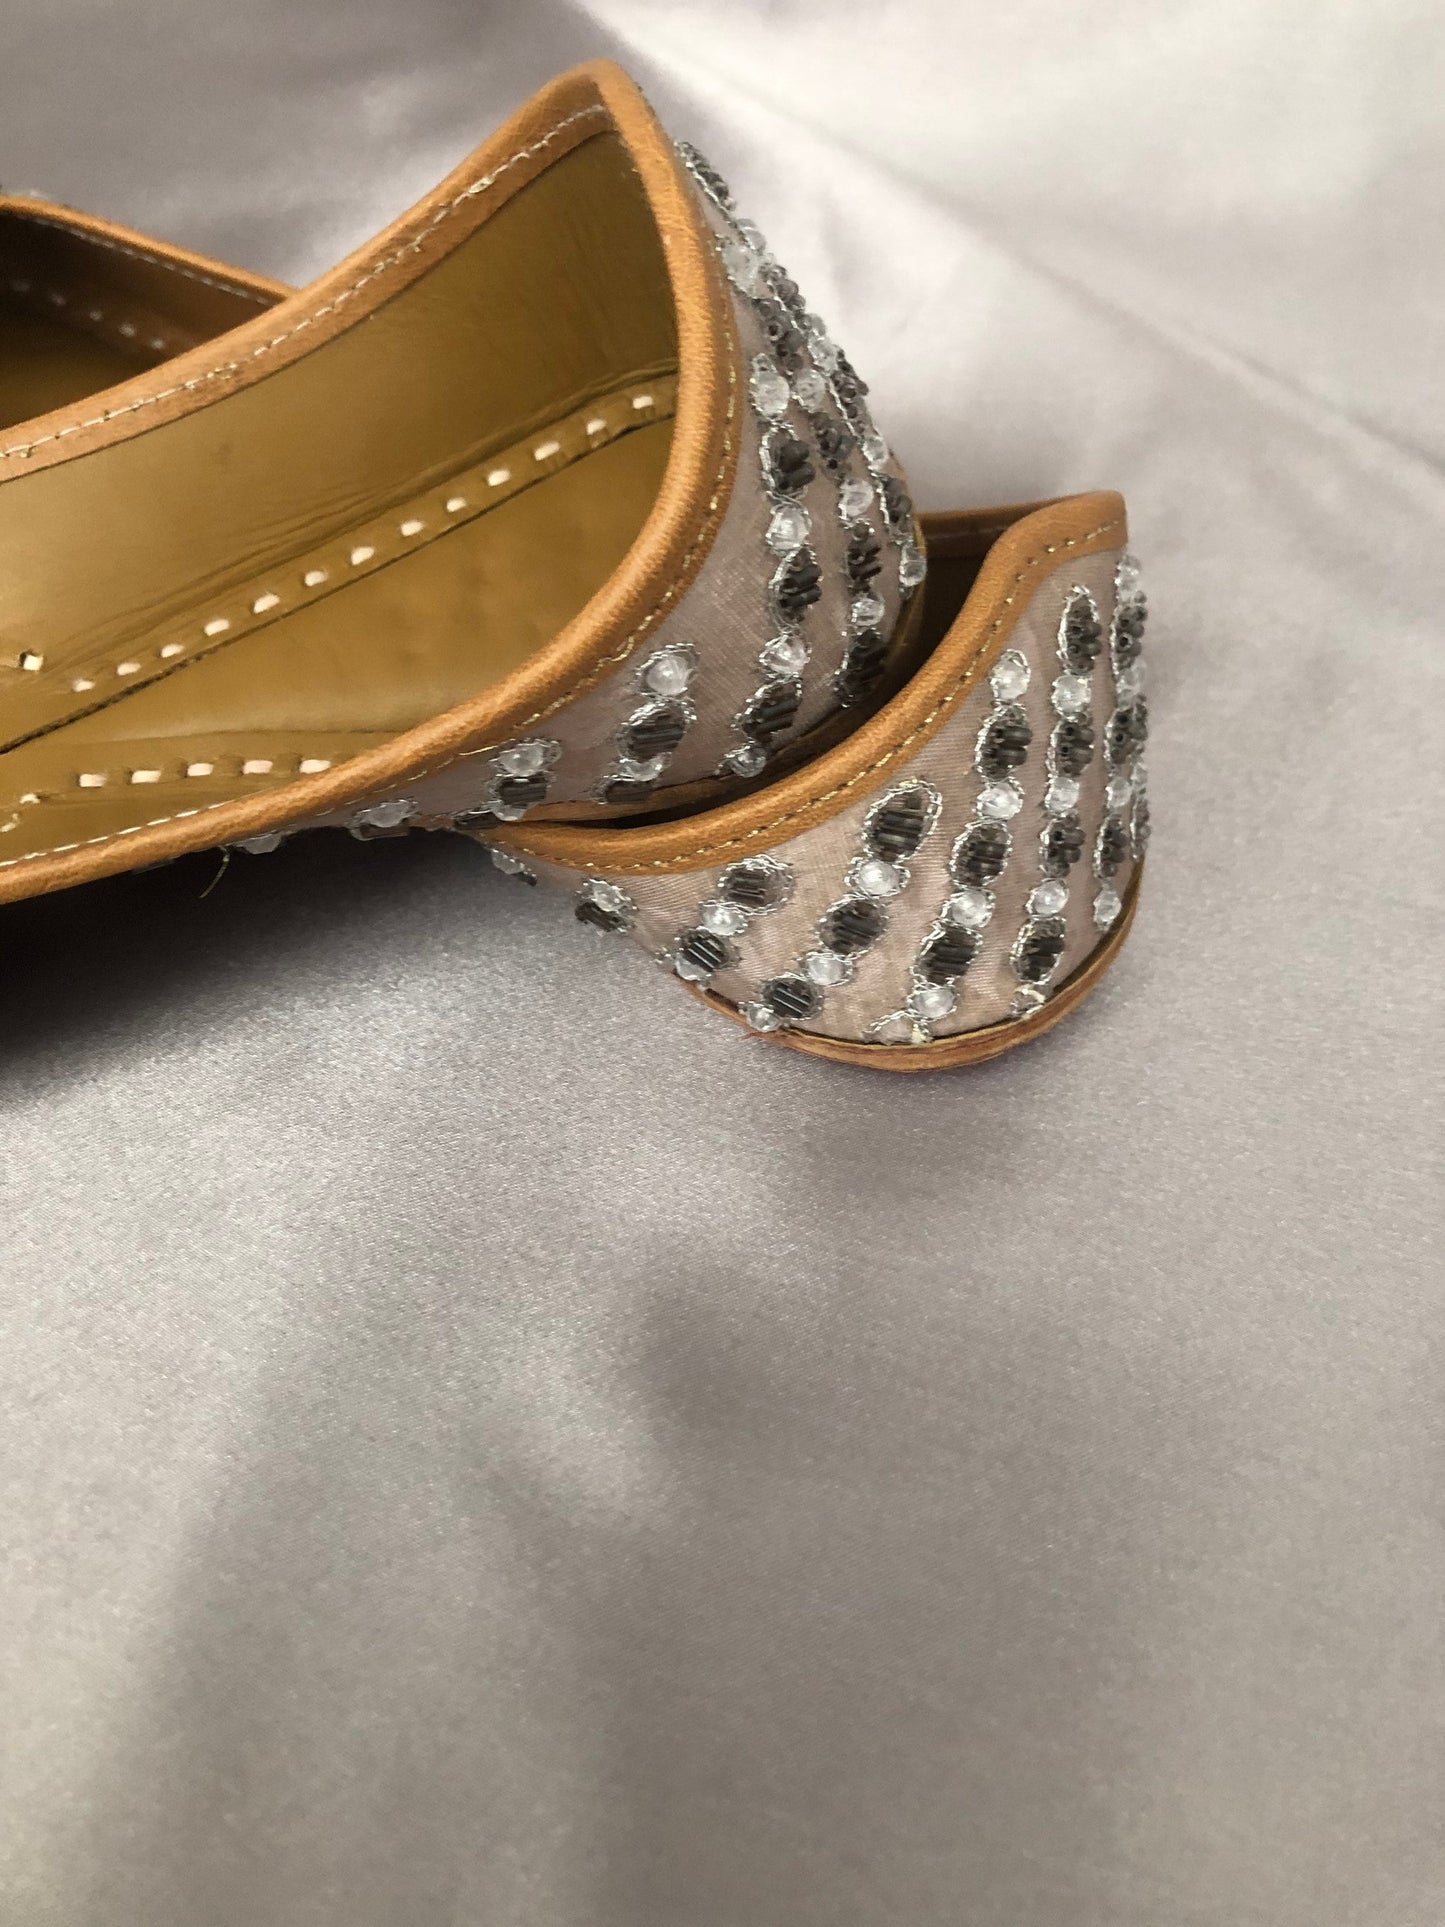 Hot Pink Punjabi Jutti/Jooti/Pakistani Khussa Wedding Shoes Perfect Bridesmaid gifts Leather Cushioned Insole US Size 9 / UK Size 7